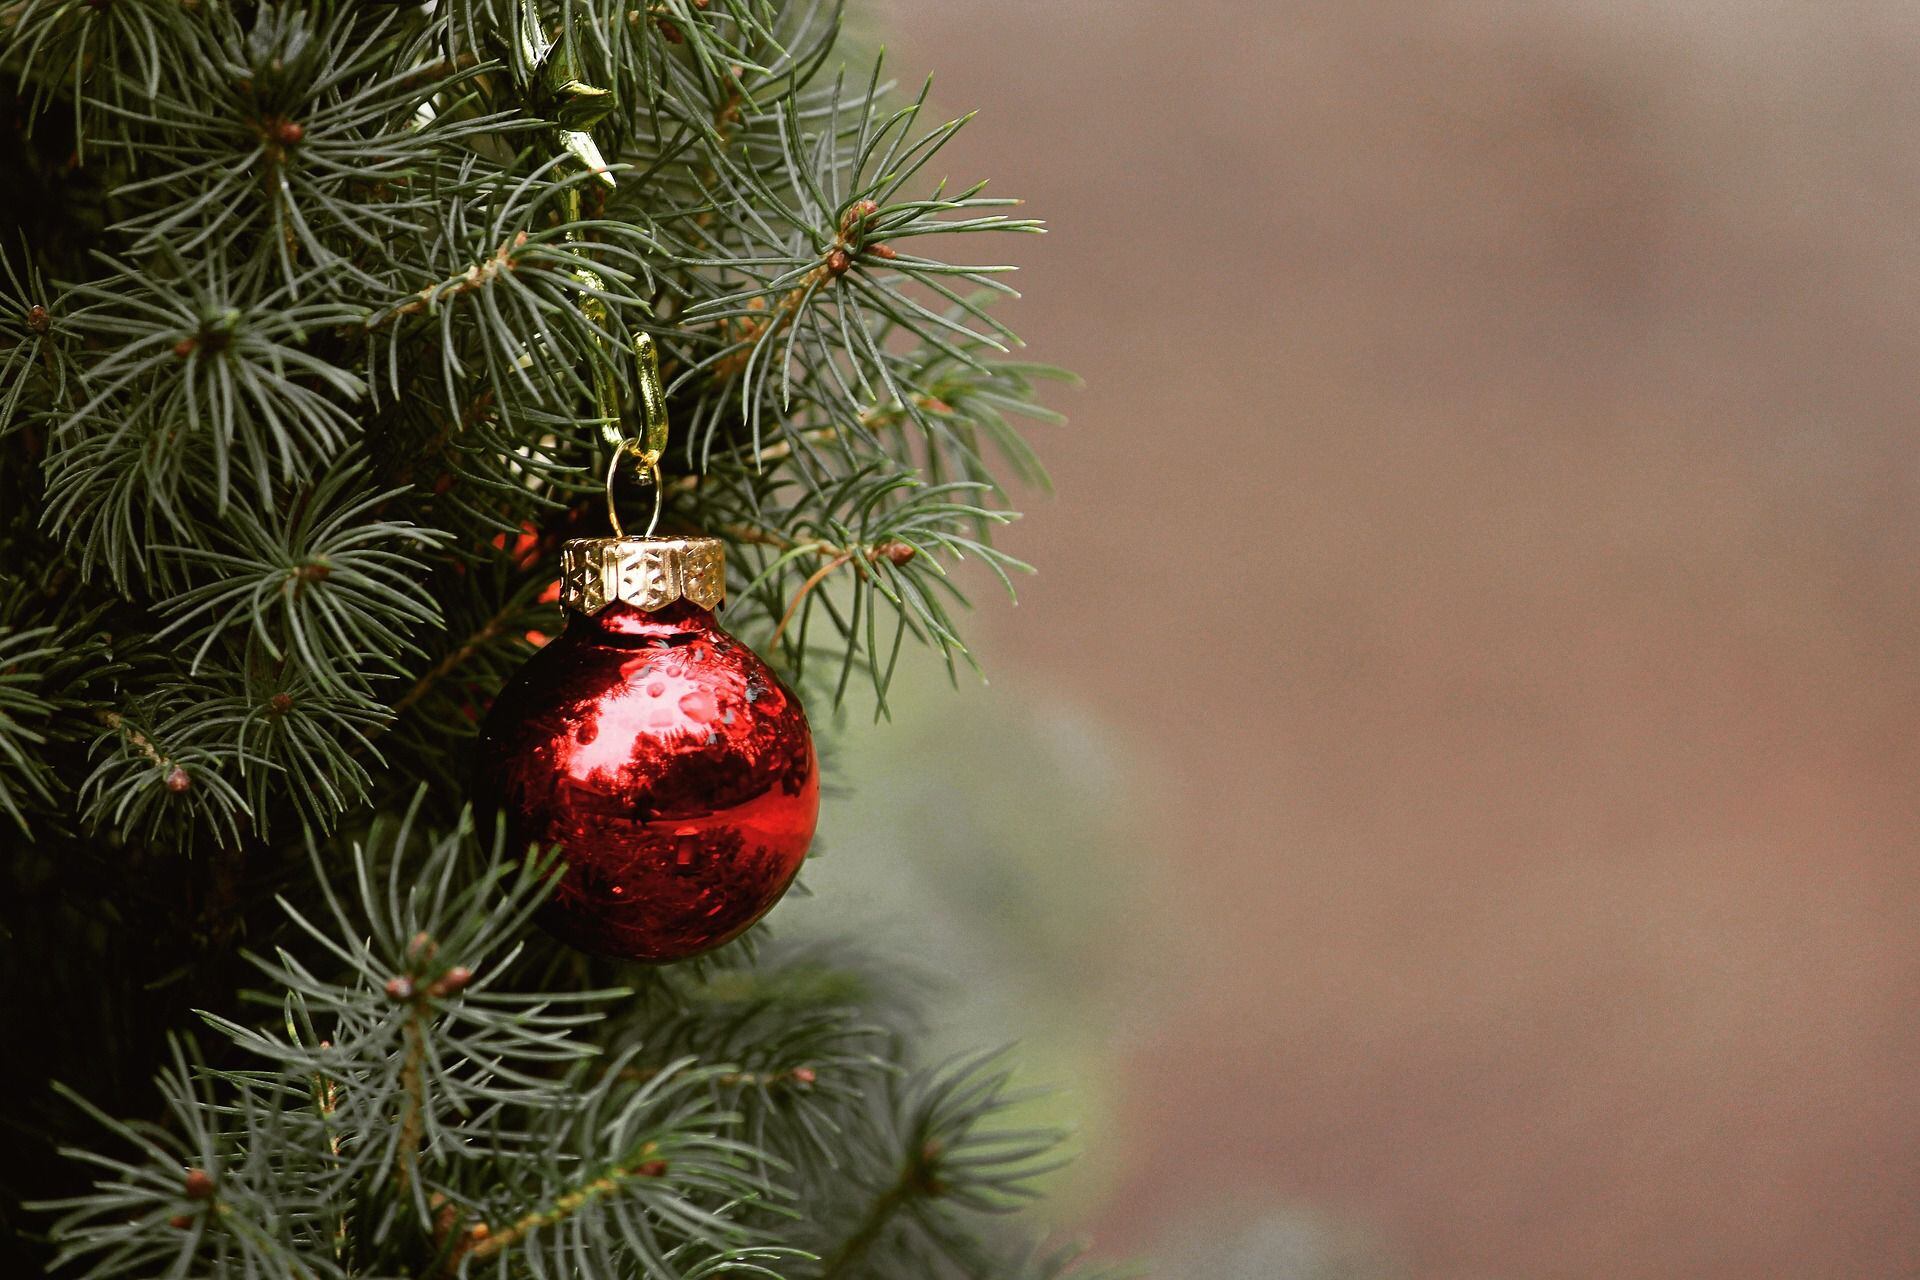 Historia del árbol de Navidad